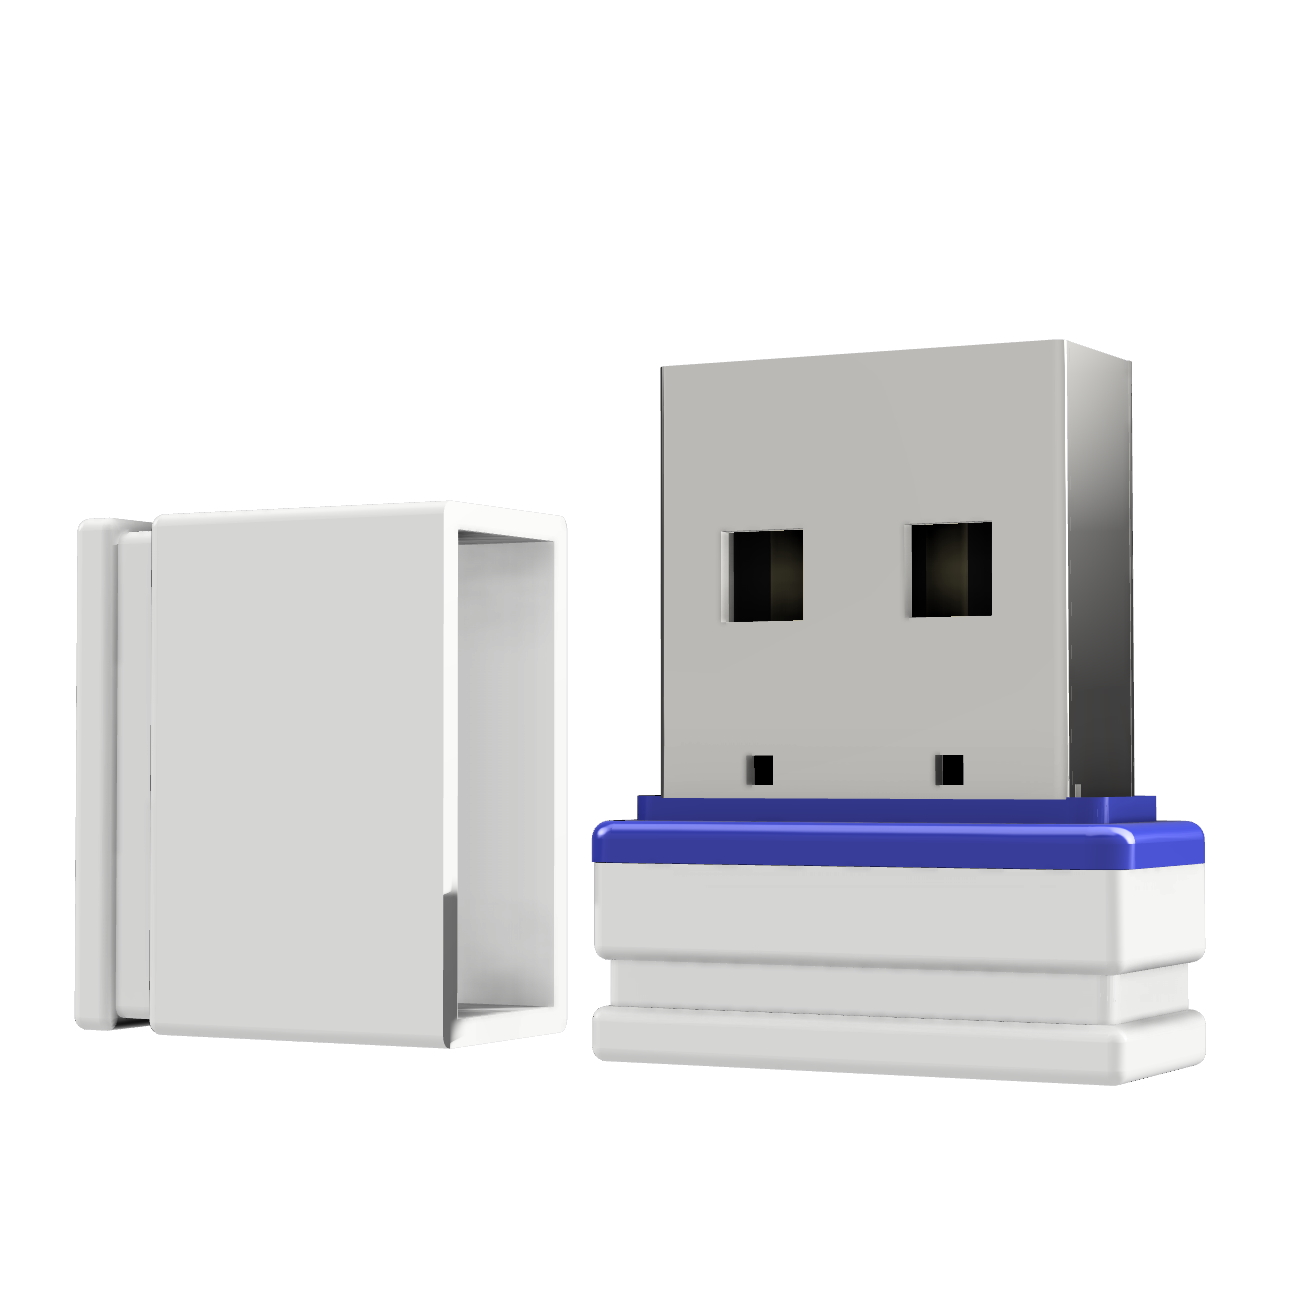 GB) (Weiss/Blau, ®ULTRA USB-Stick GERMANY 1 Mini USB P1